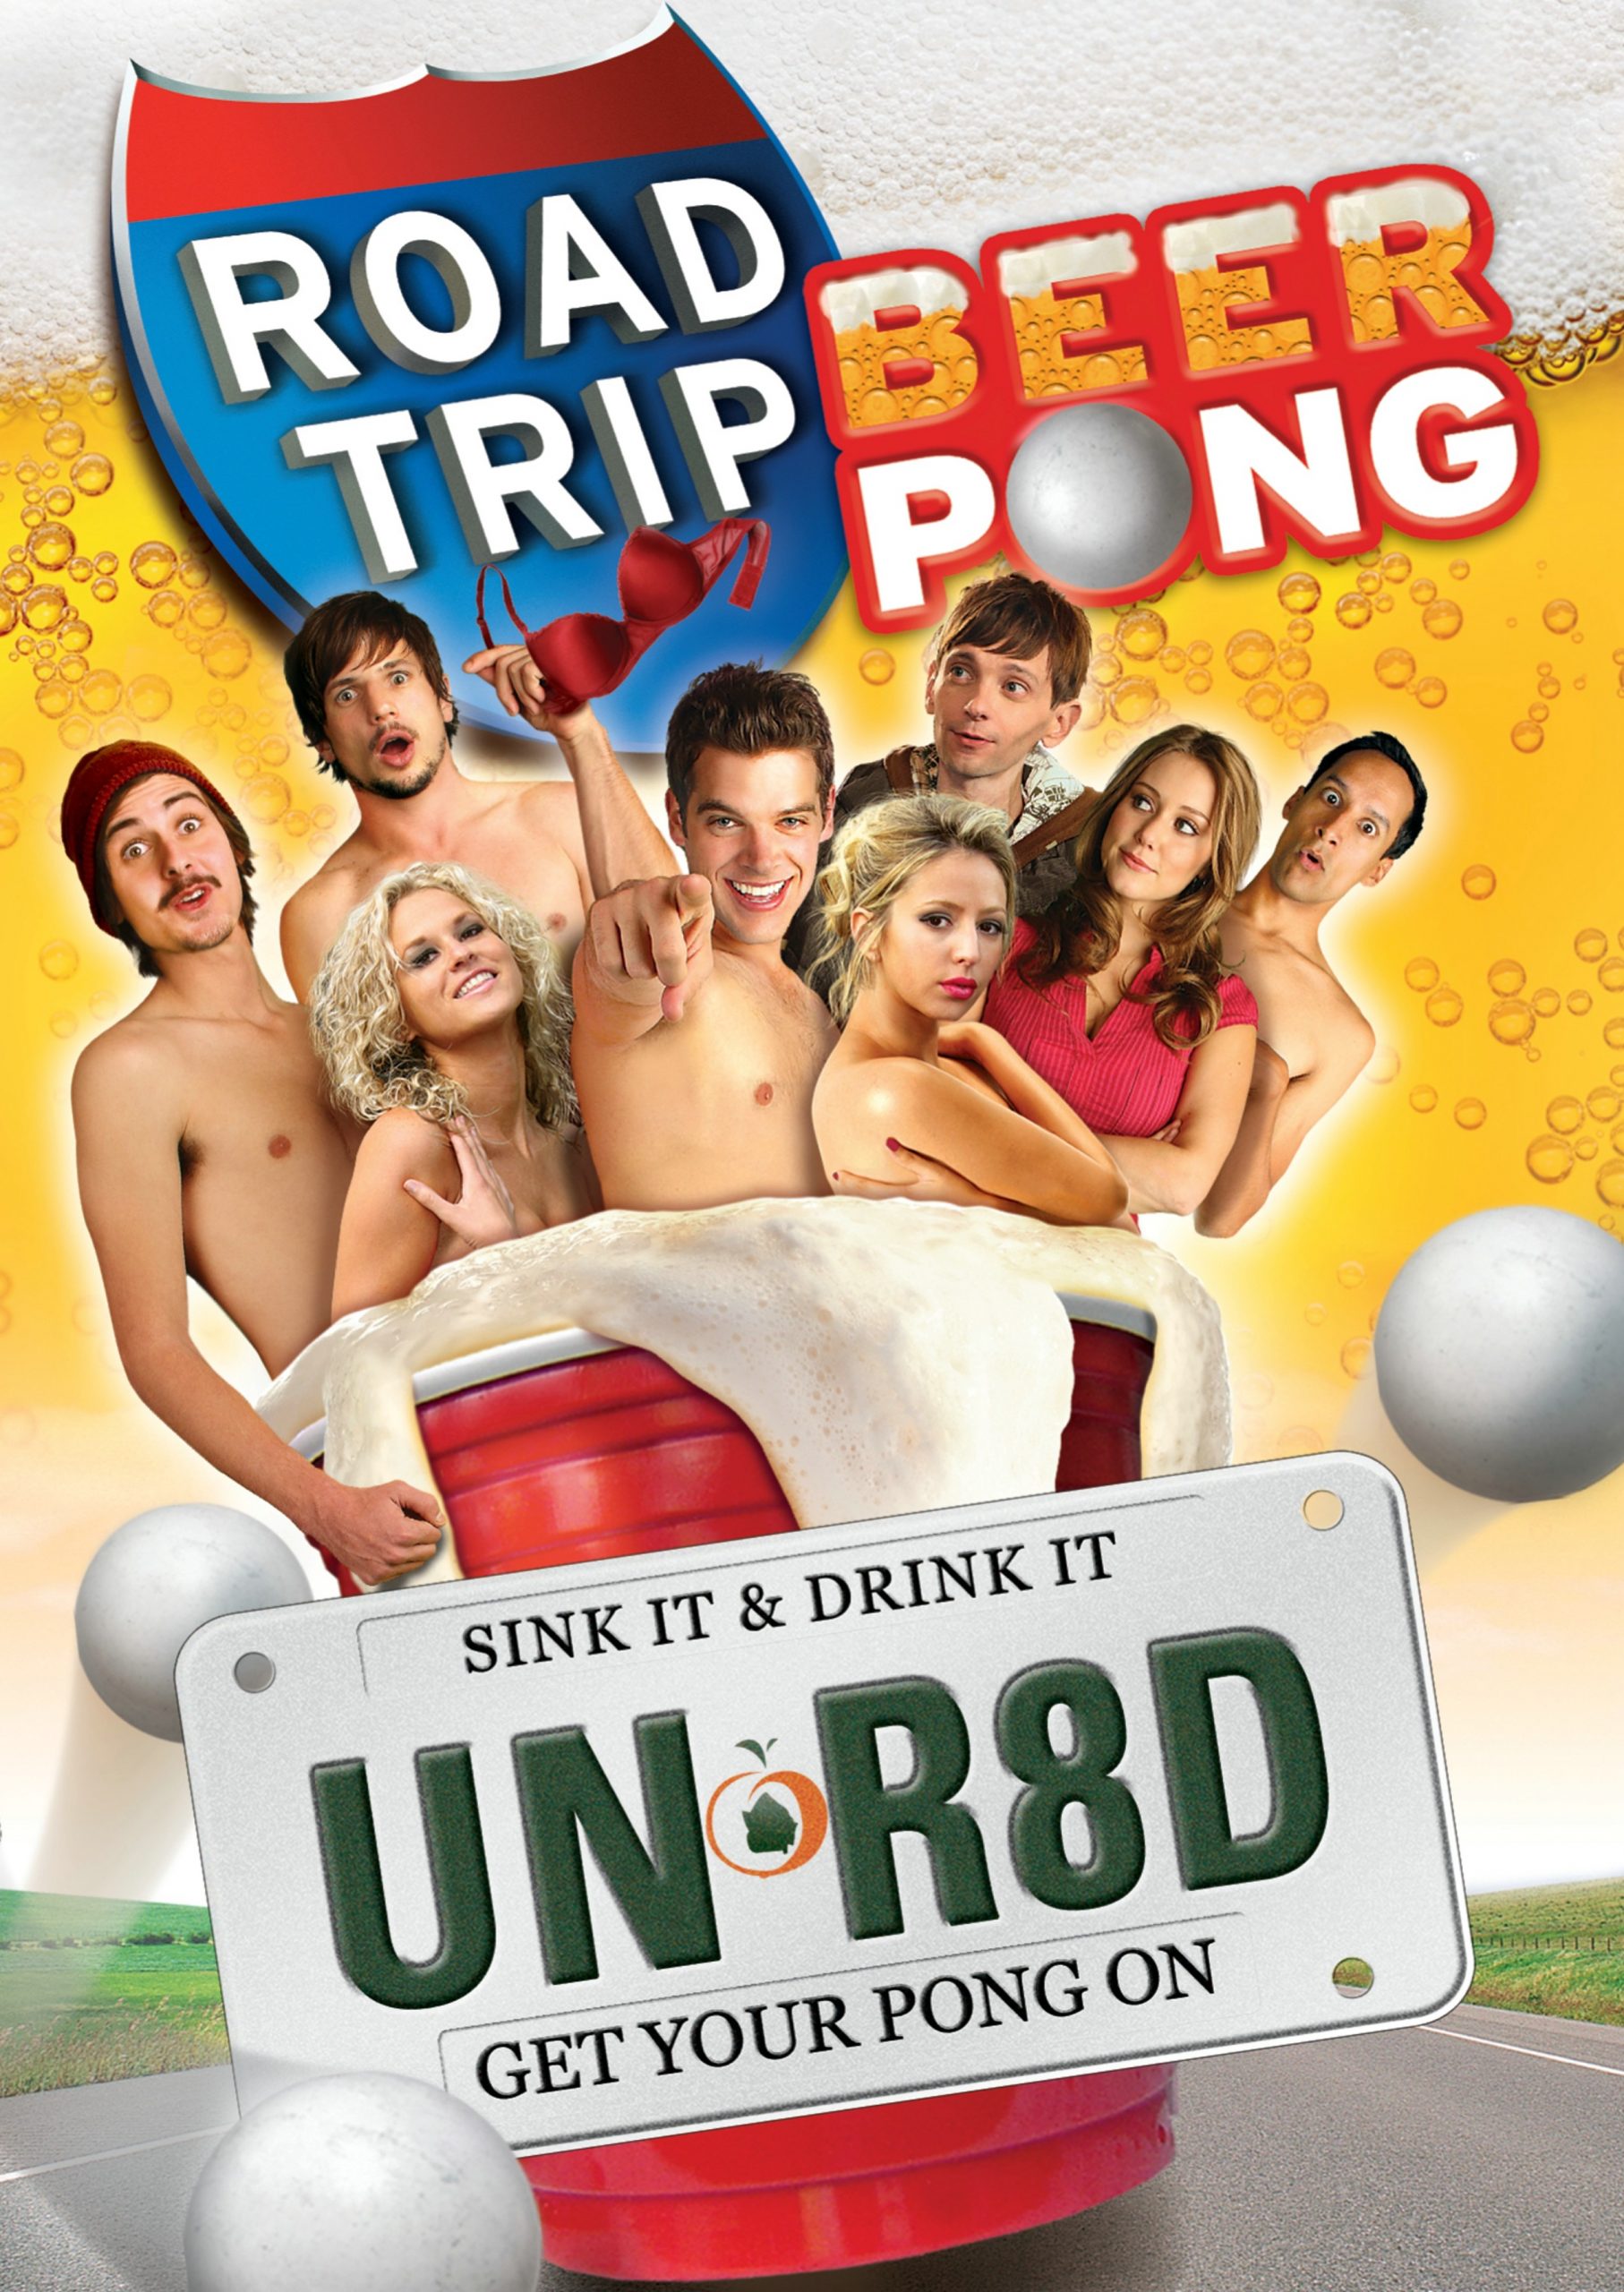 ดูหนังออนไลน์ฟรี Road Trip Beer Pong (2009) เทปสะบึมส์! ต้องเอาคืนก่อนถึงมือเธอ 2 หนังเต็มเรื่อง หนังมาสเตอร์ ดูหนังHD ดูหนังออนไลน์ ดูหนังใหม่